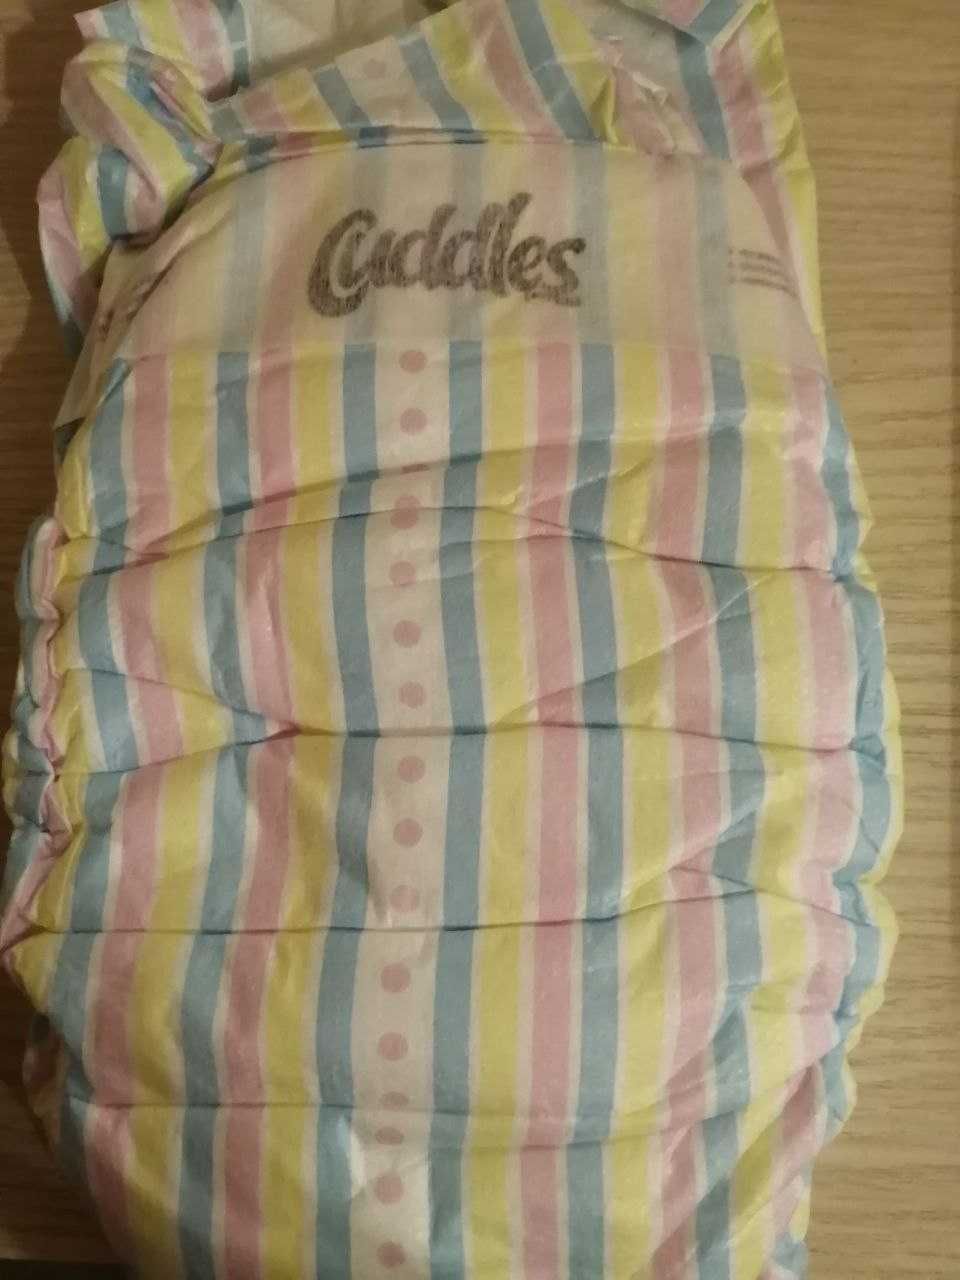 Детские подгузники Cuddles. Размер 6 (13-28 кг) в пачке 18 шт. 1900 тг